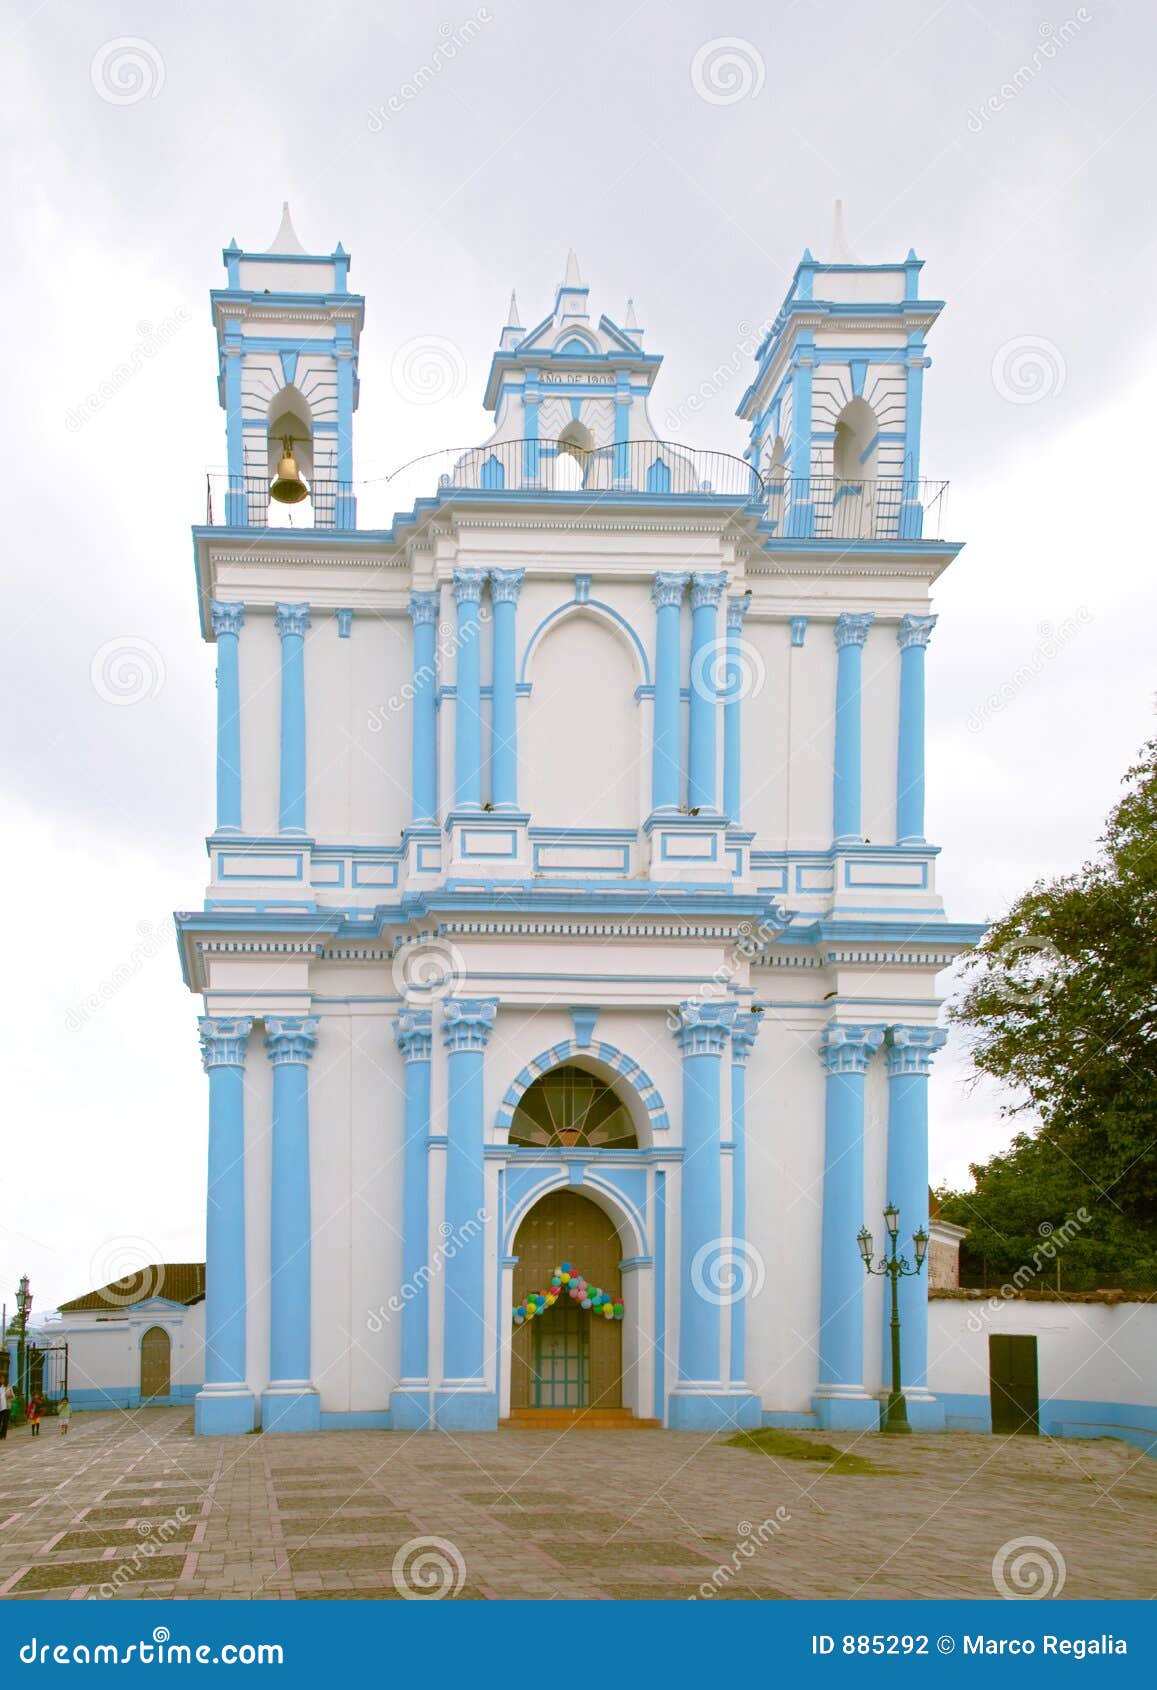 church of santa lucia in san cristobal de las casas